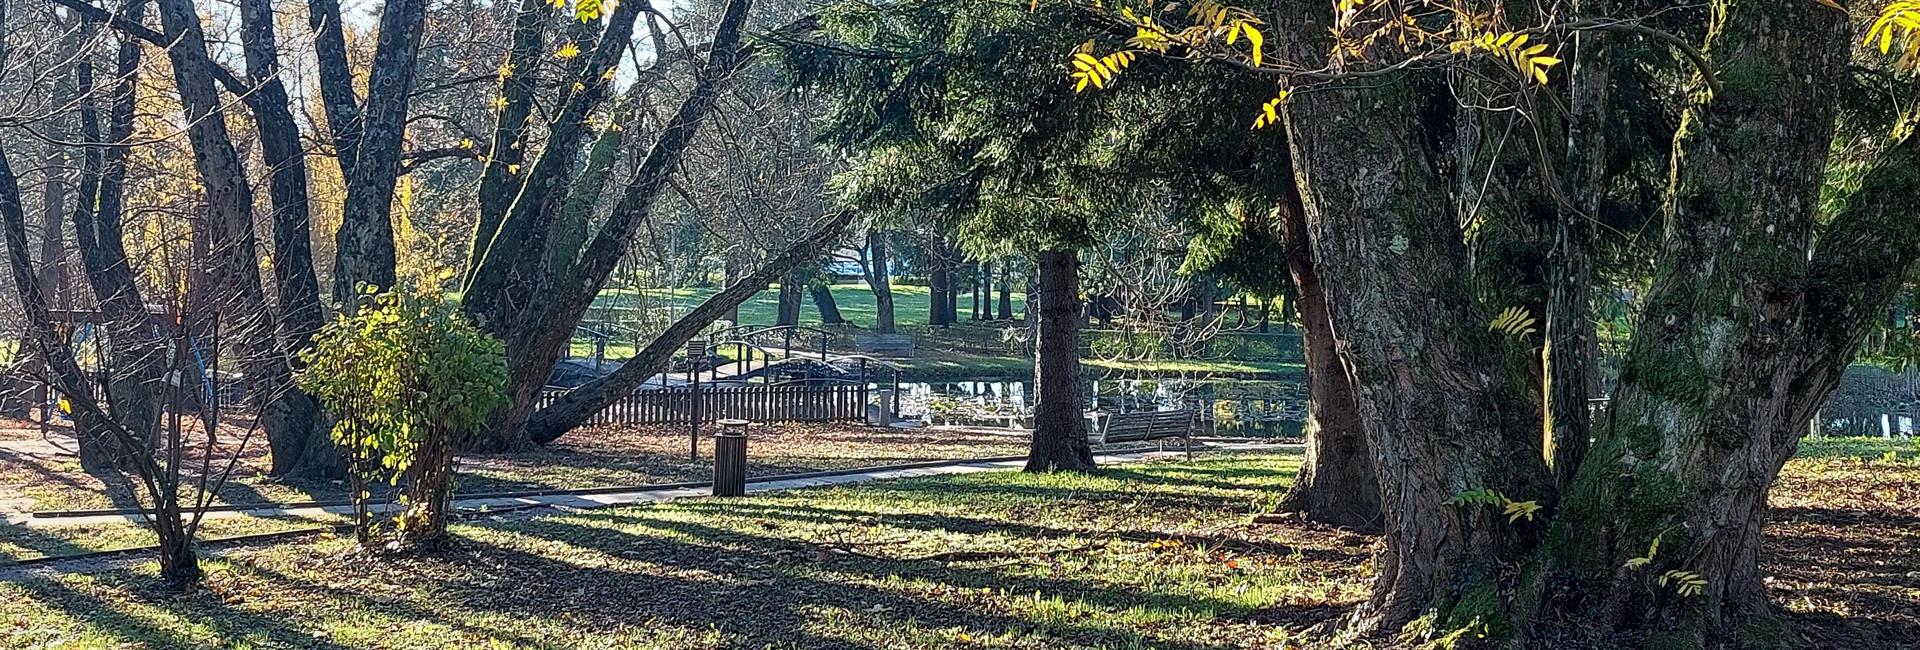 Kindlerjev park